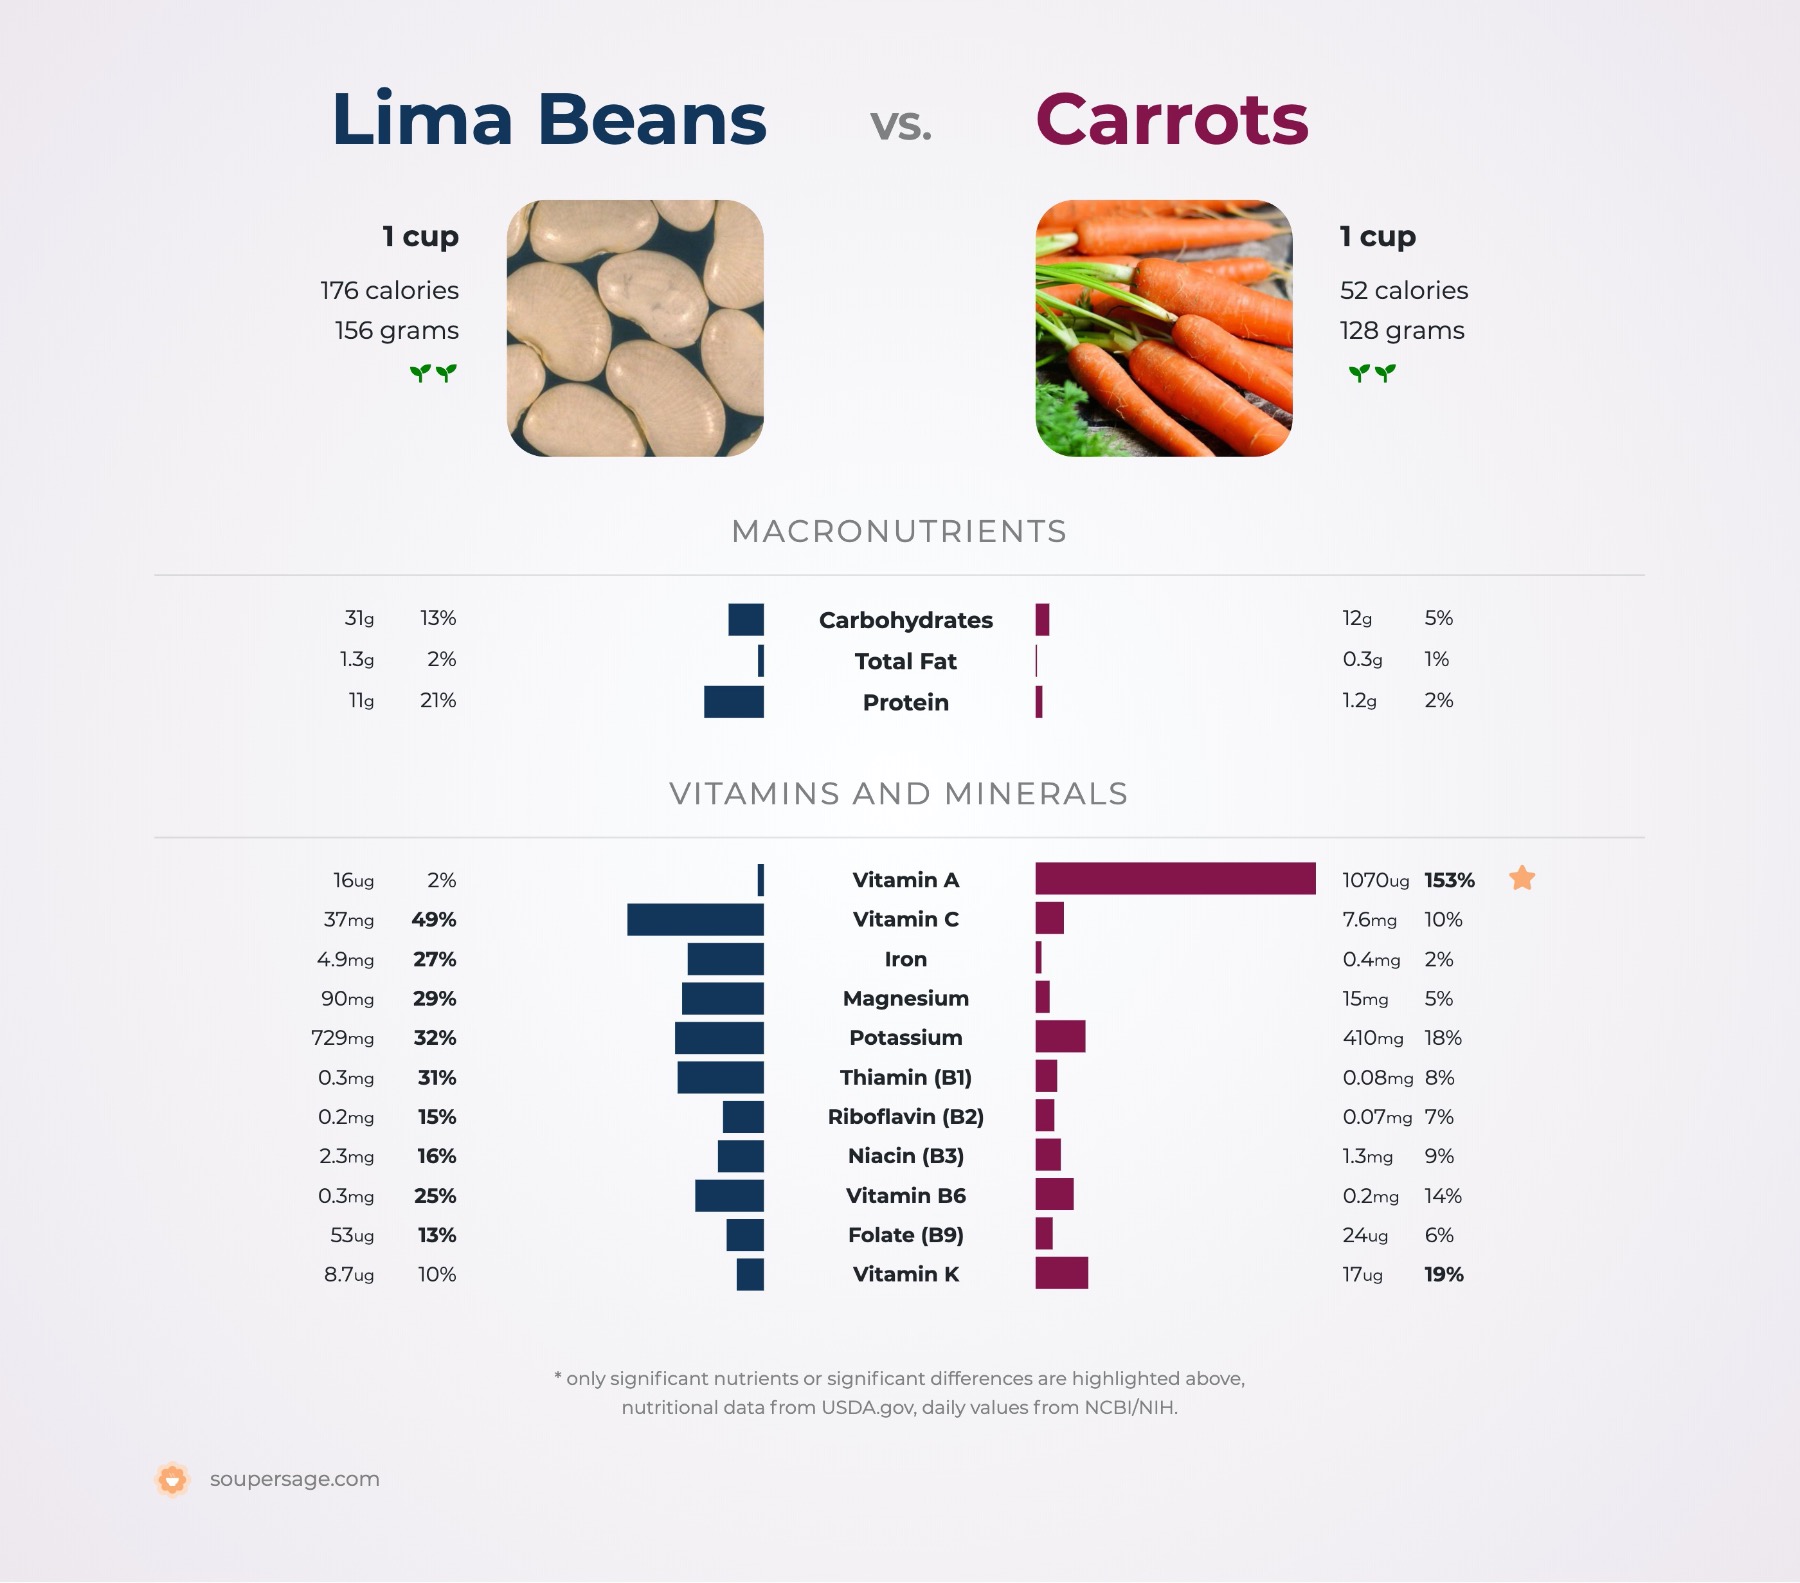 nutrition comparison of carrots vs. lima beans